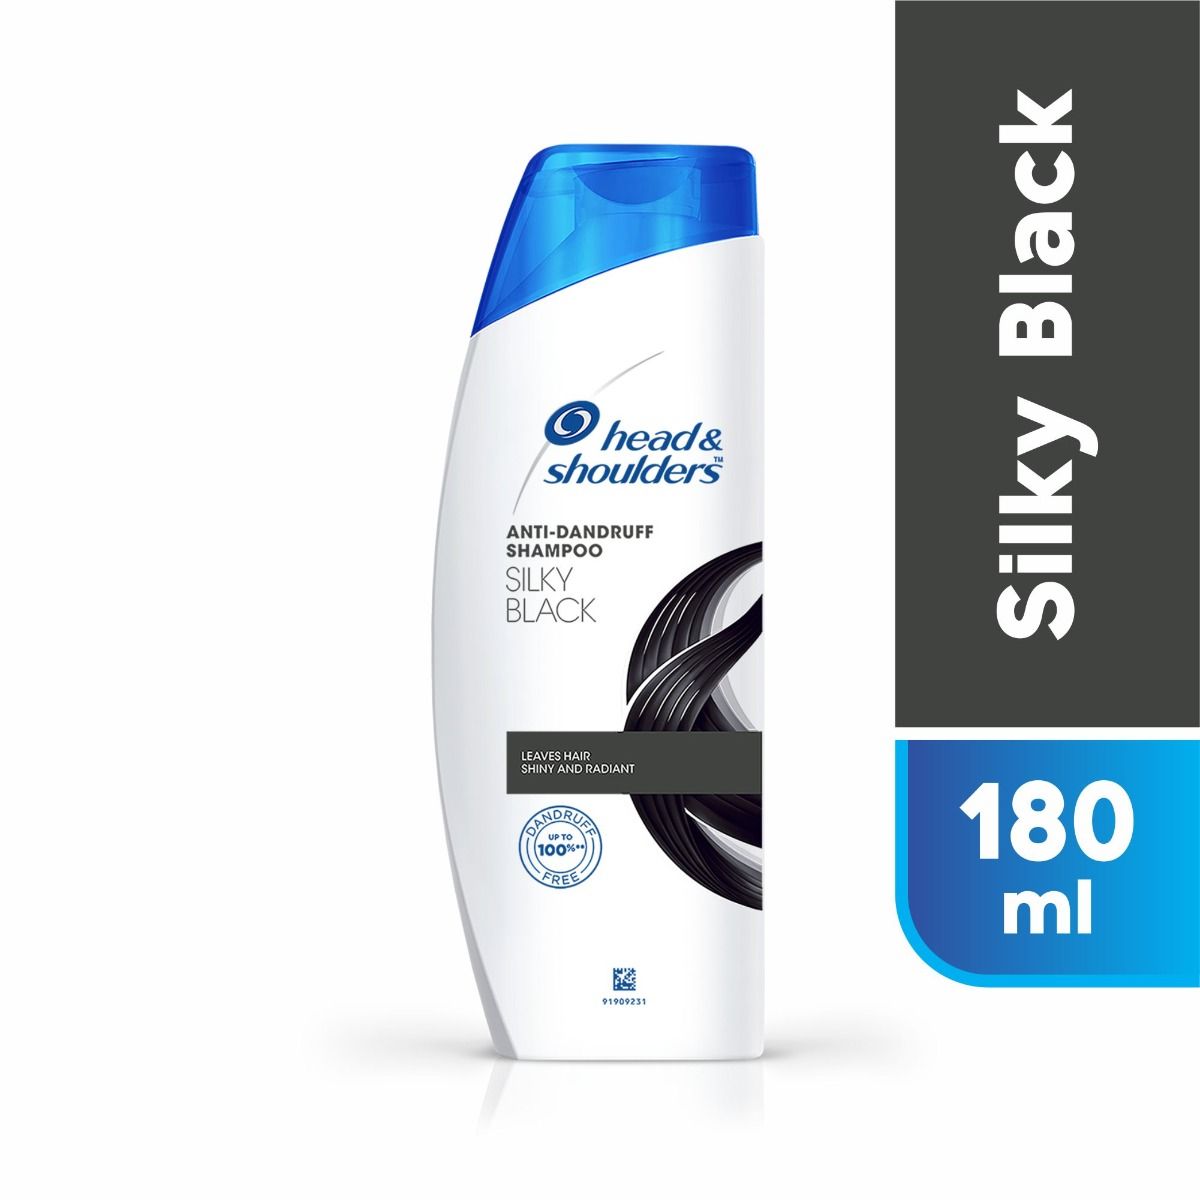 Head & Shoulders Anti-Dandruff Silky Black Shampoo, 180 ml, Pack of 1 